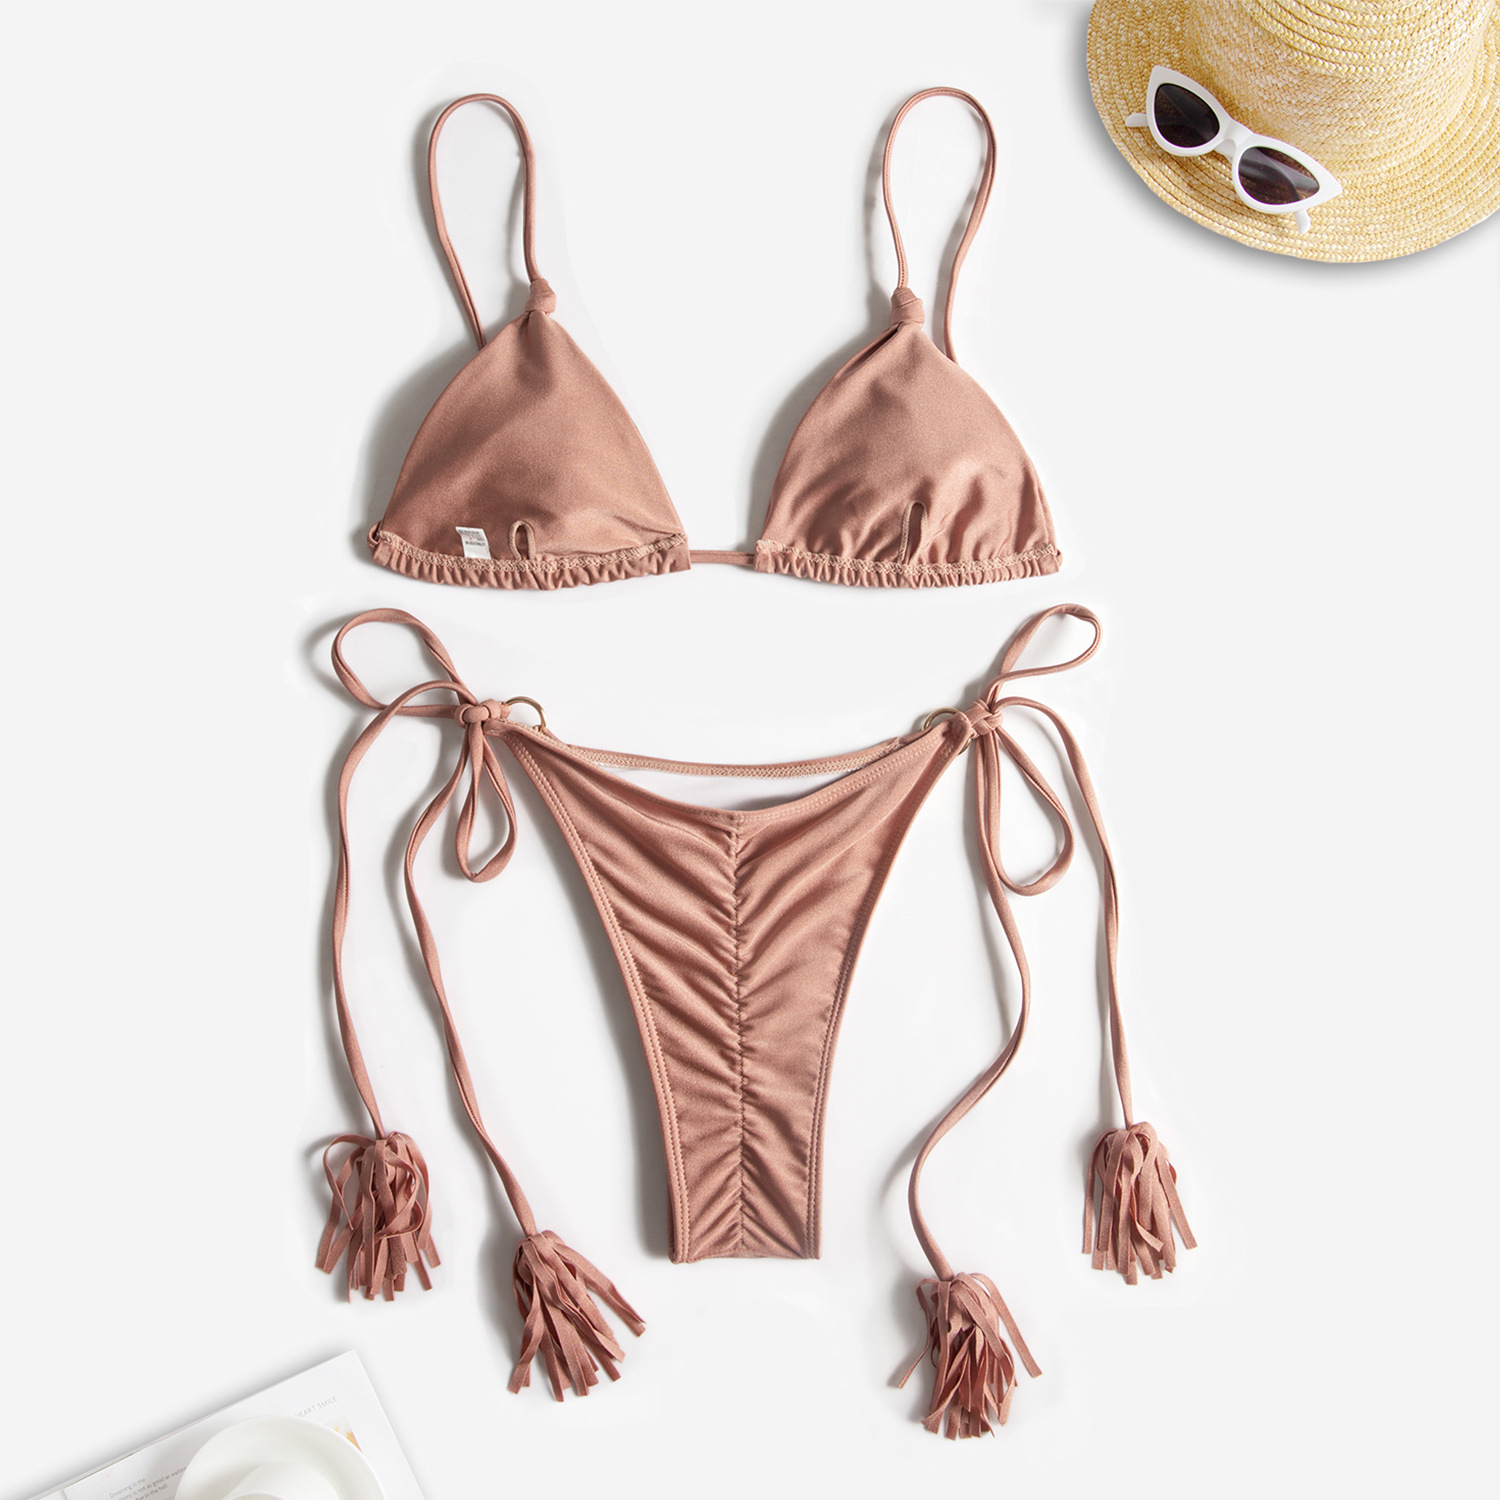 速卖通ebay手工钩织编绳比基尼2020新款性感泳装女士分体泳衣-阿里巴巴